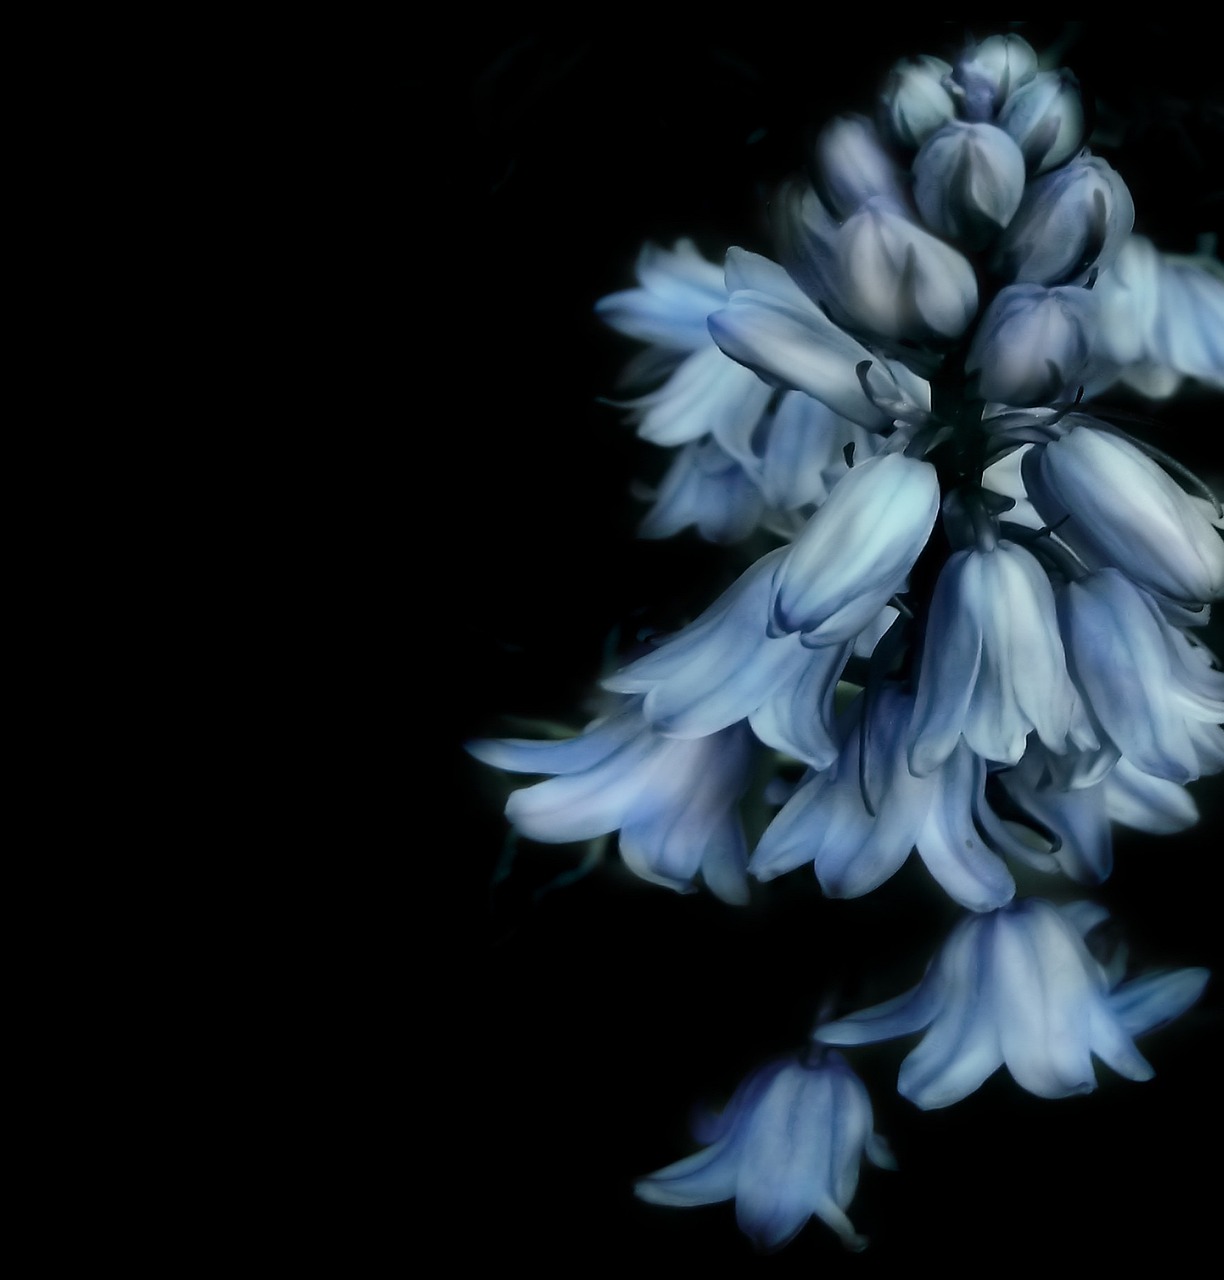 Drooping blue bells flower